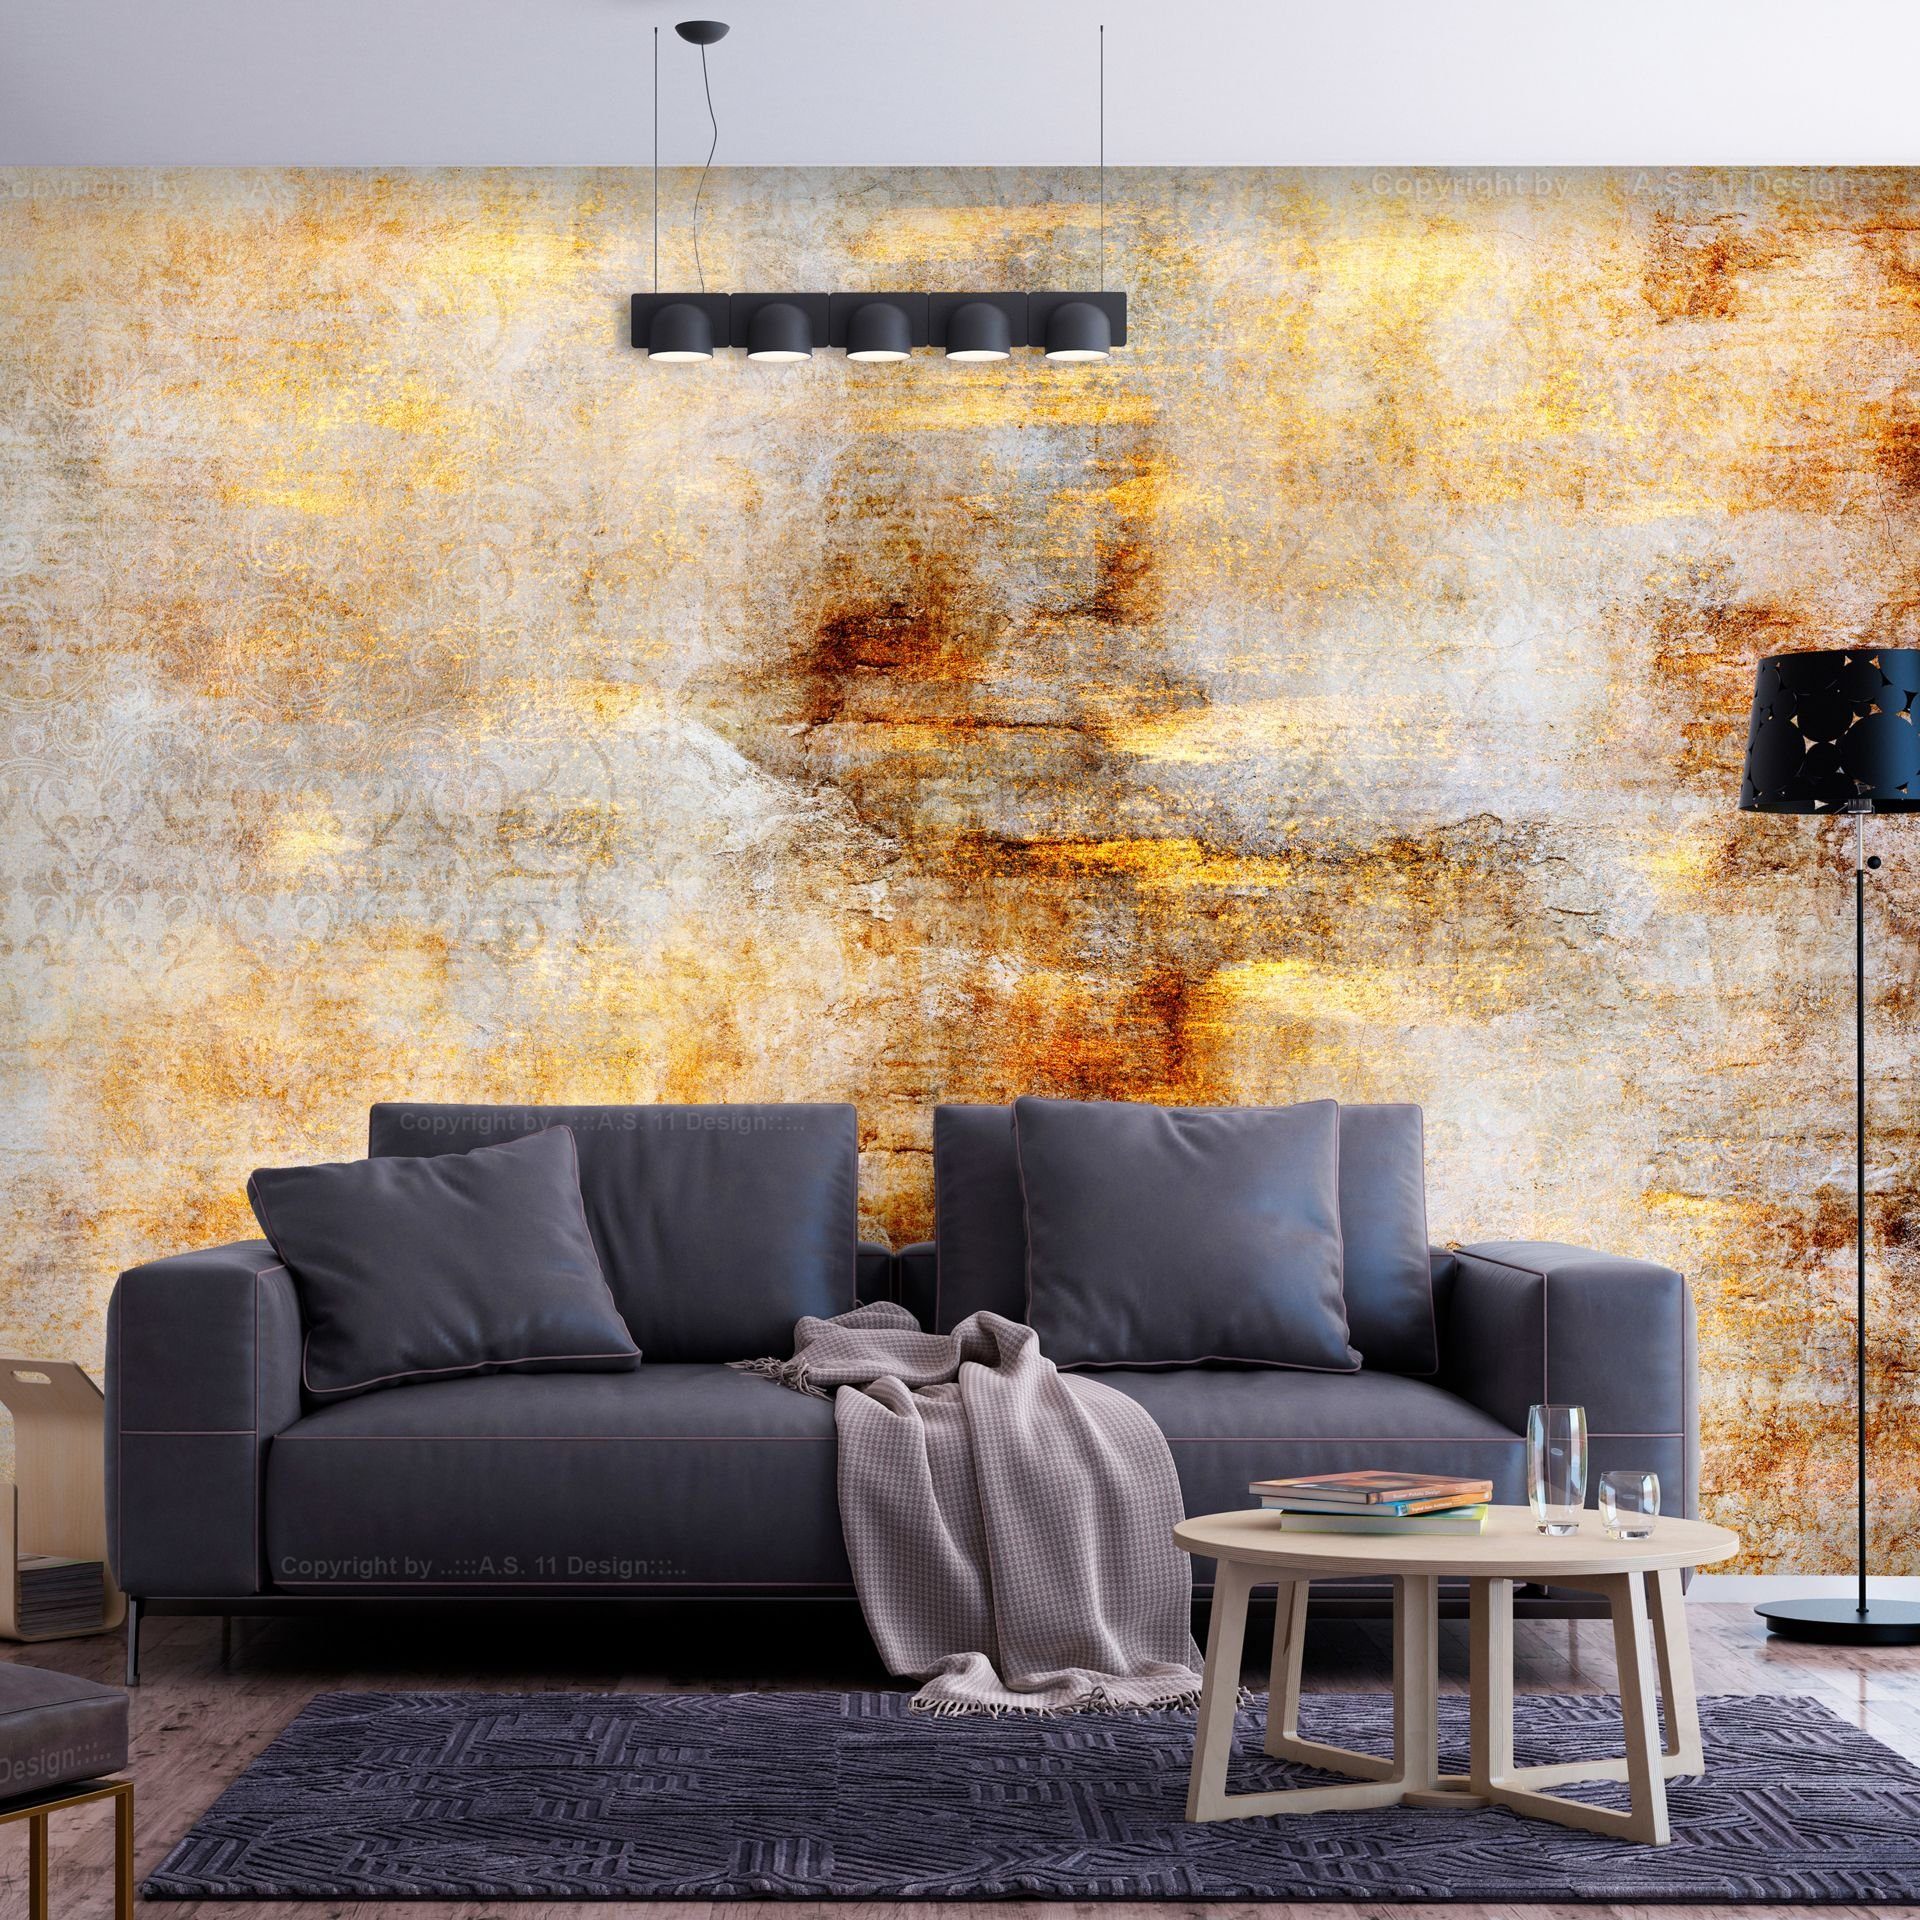 KUNSTLOFT Vliestapete Golden Expression 0.98x0.7 m, matt, lichtbeständige Design Tapete